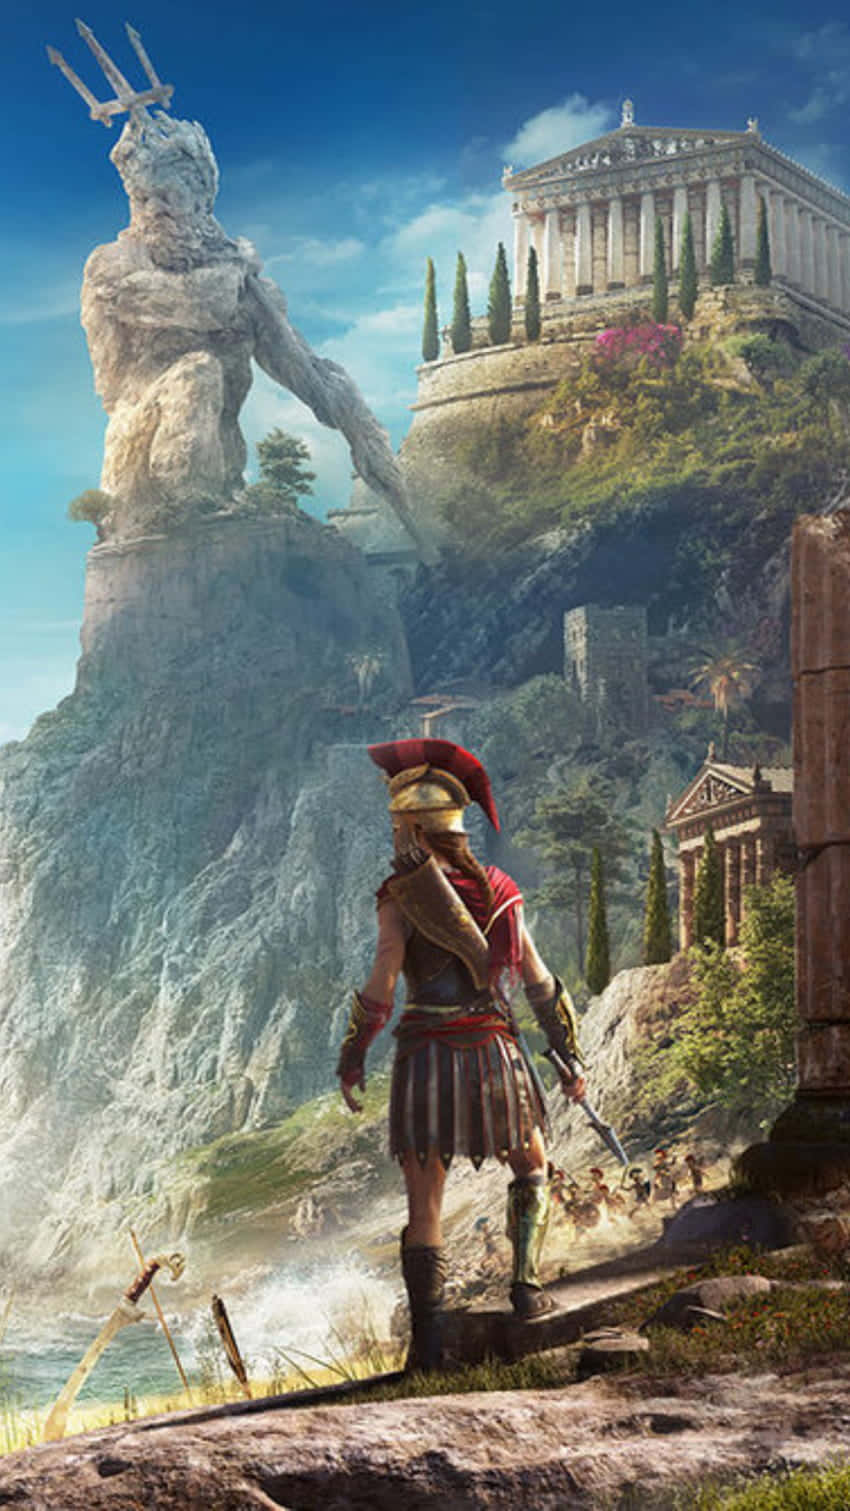 Tag på eventyr gennem det antikke Grækenland i Android Assassins Creed Odyssey-scenen.